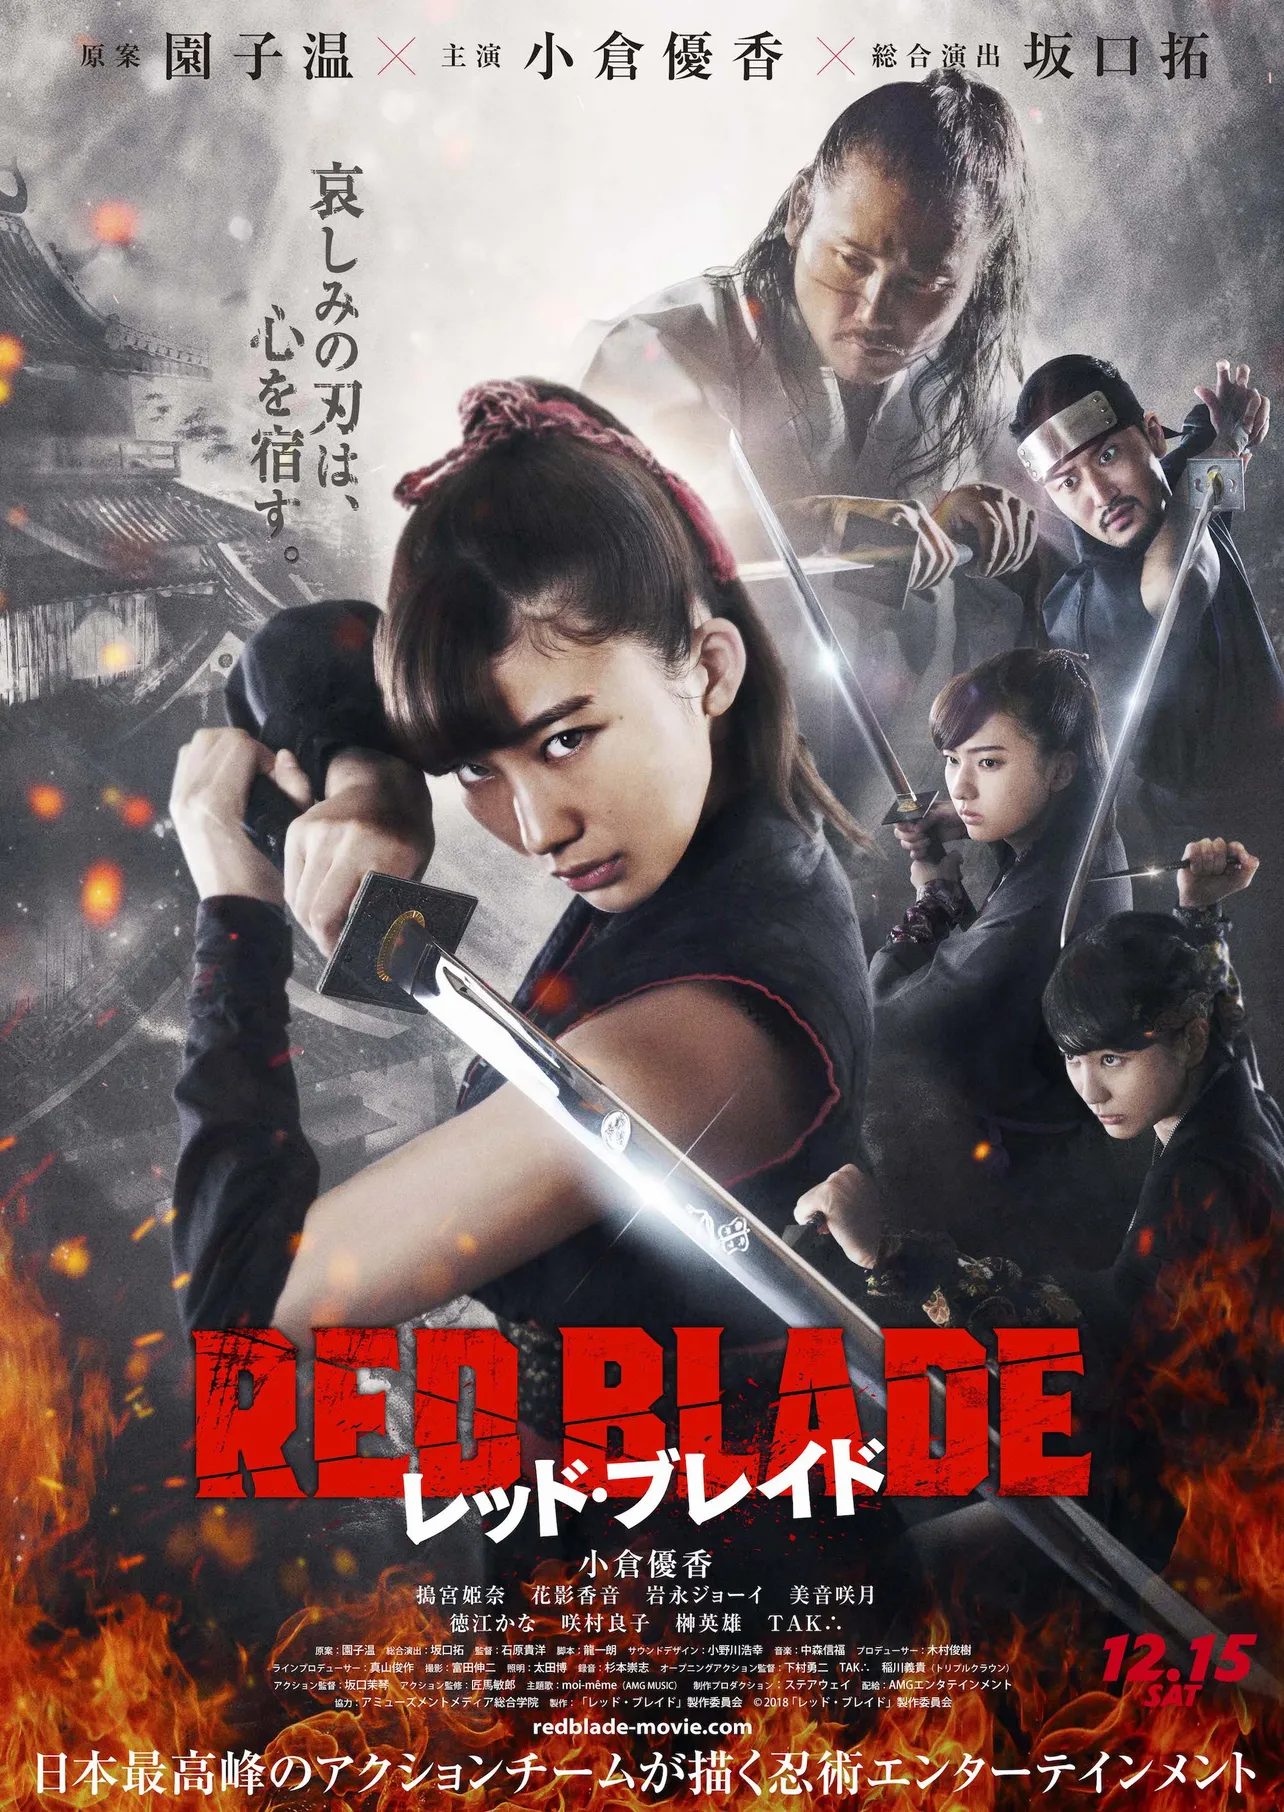 映画「レッド・ブレイド」は12月15日(土)より、 東京・シネマート新宿ほかで公開